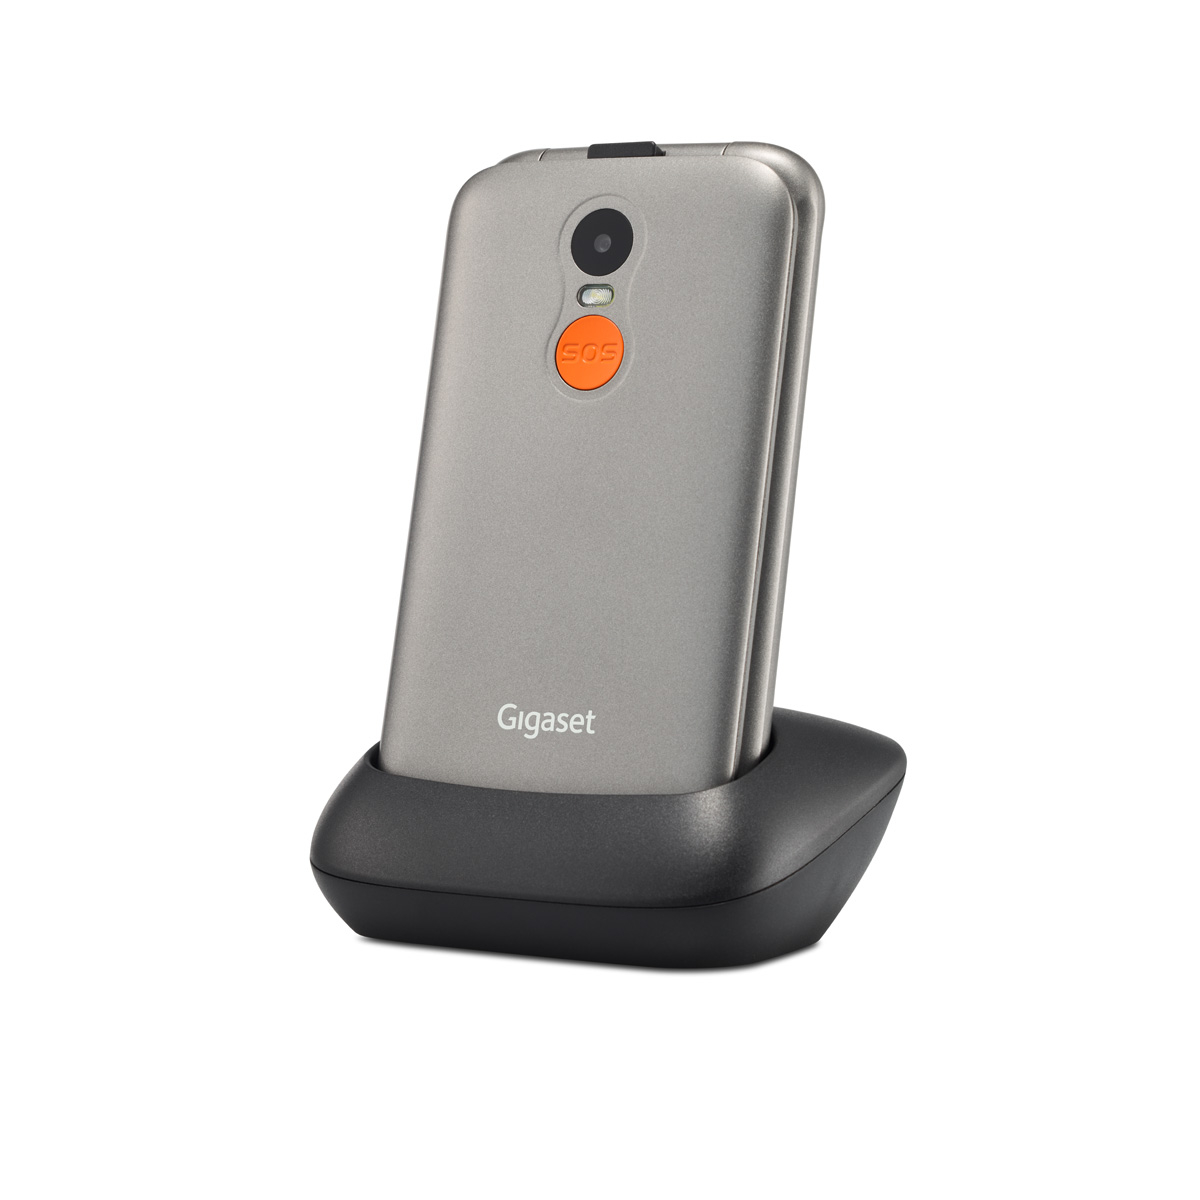 Discover the Gigaset GL590 flip phone for seniors